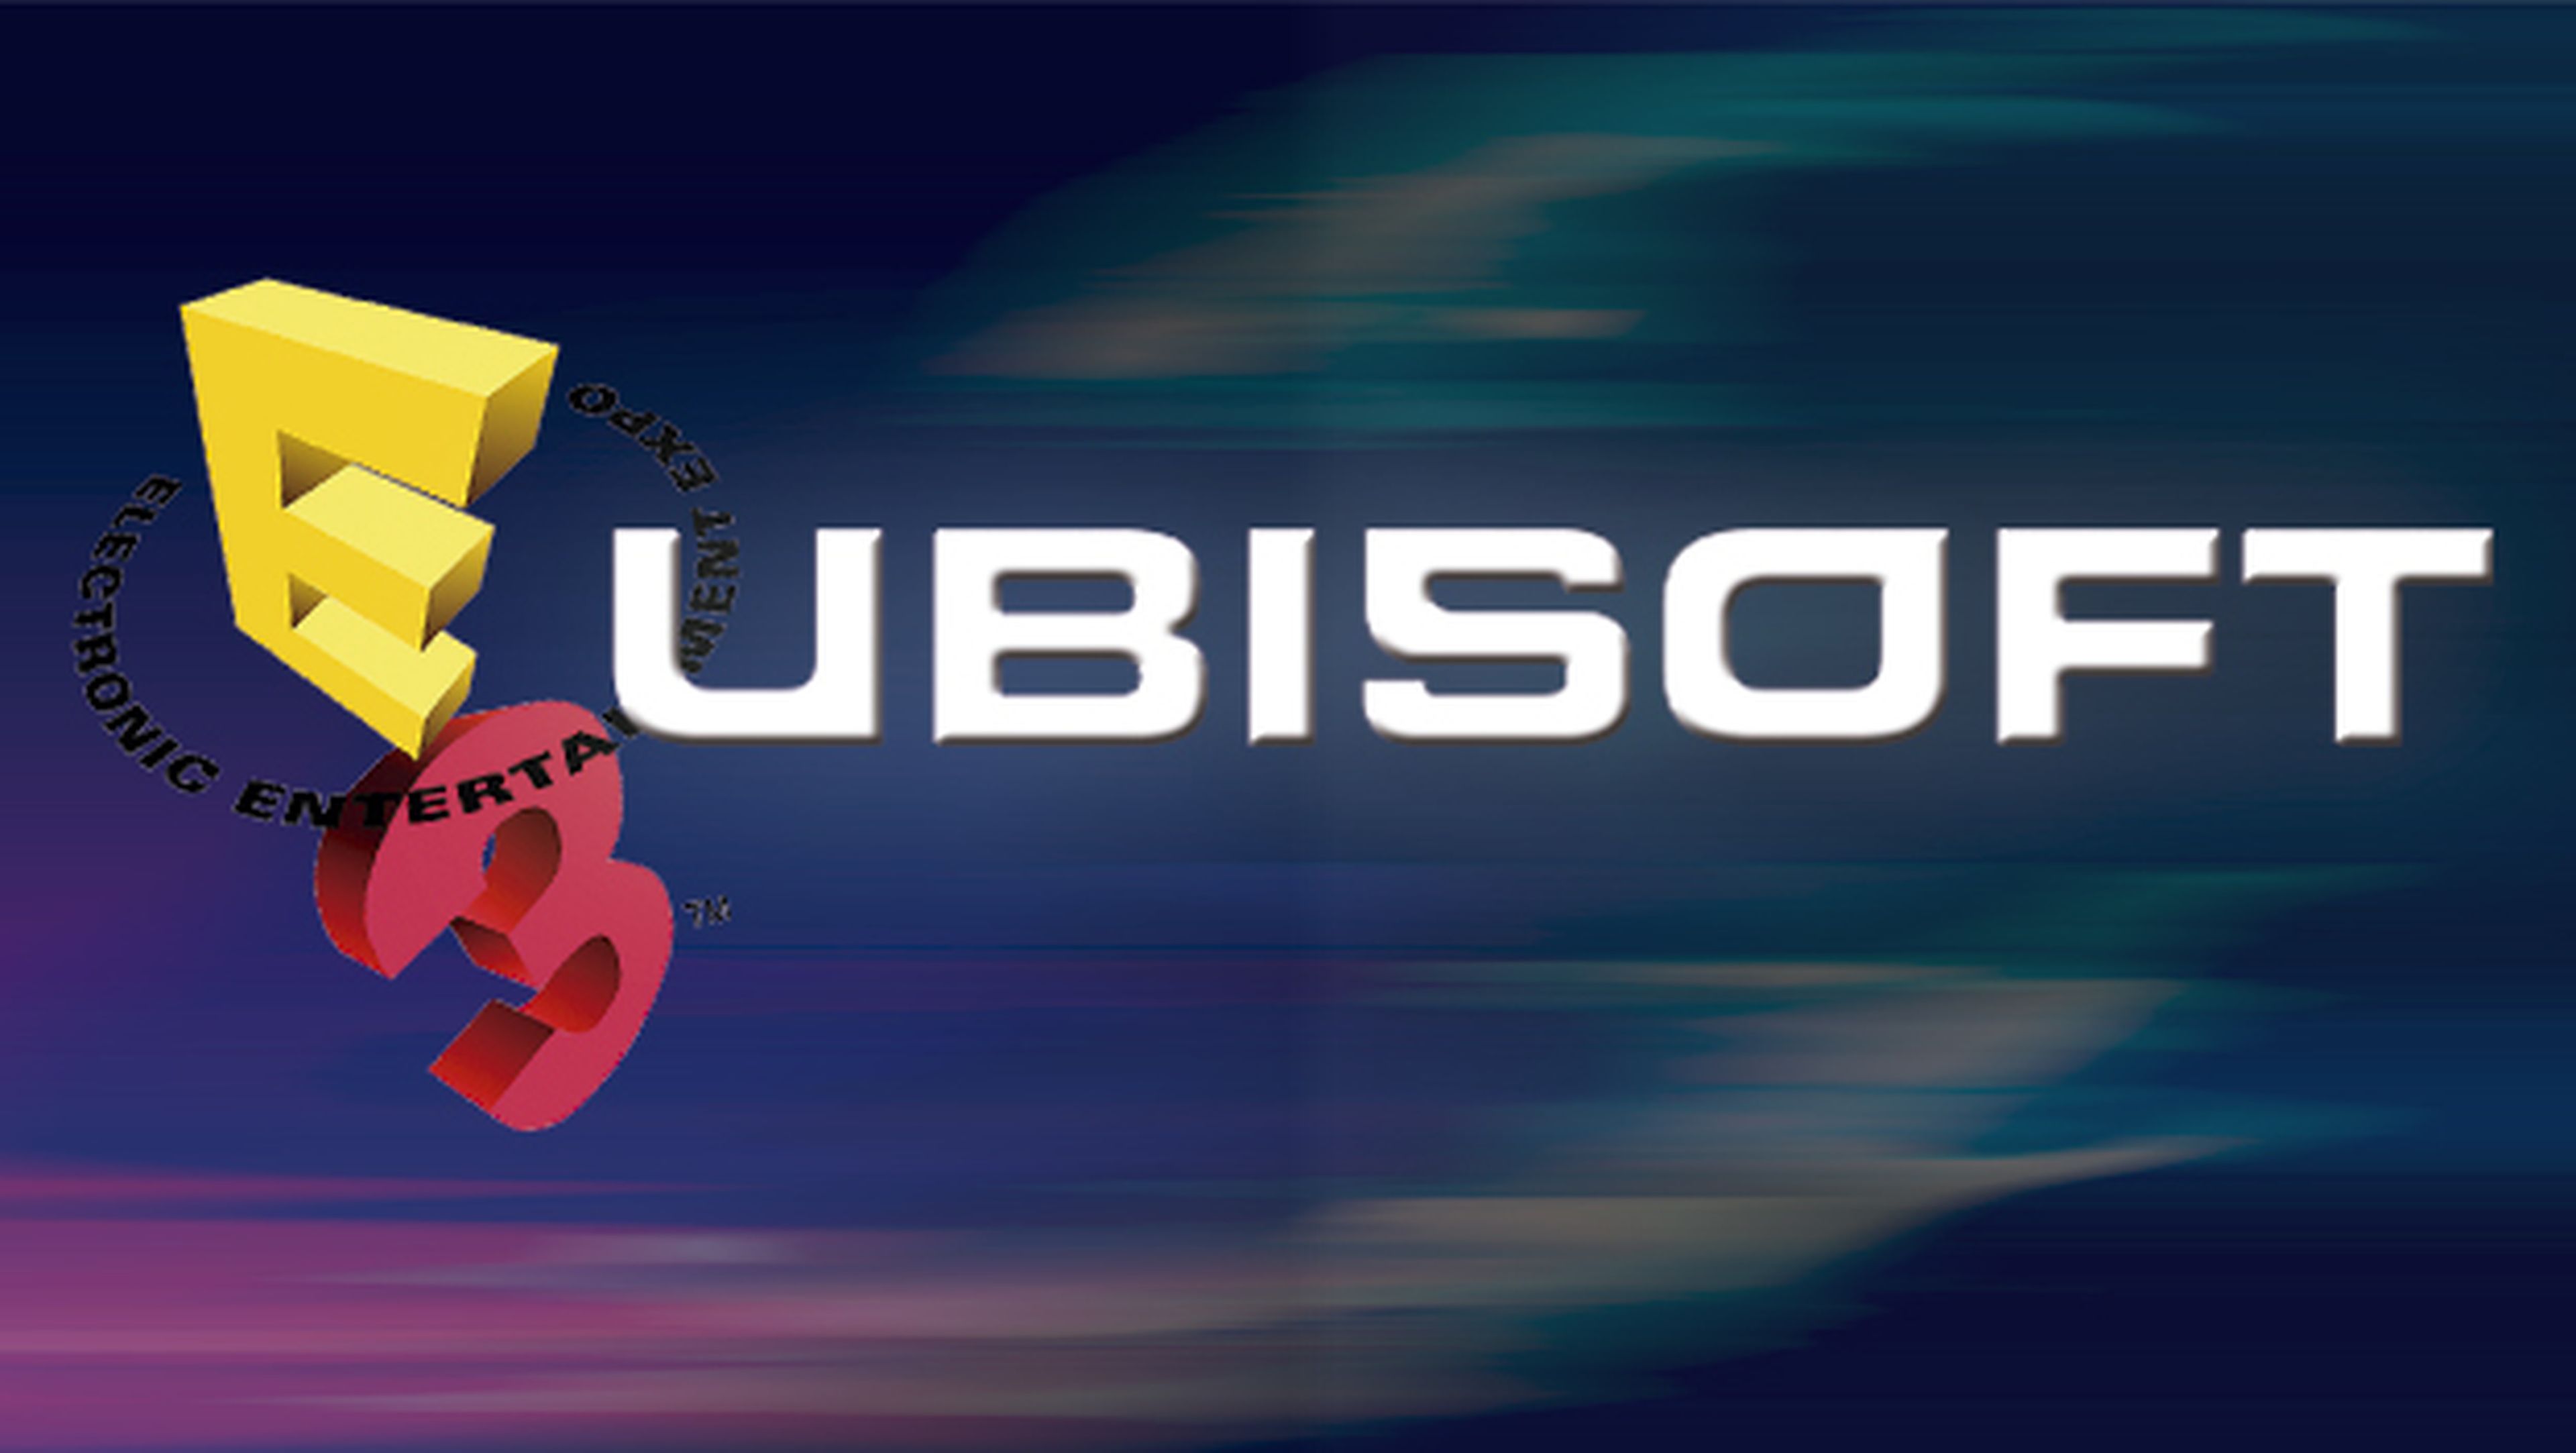 Ver en streaming la conferencia de Ubisoft en el E3 2015